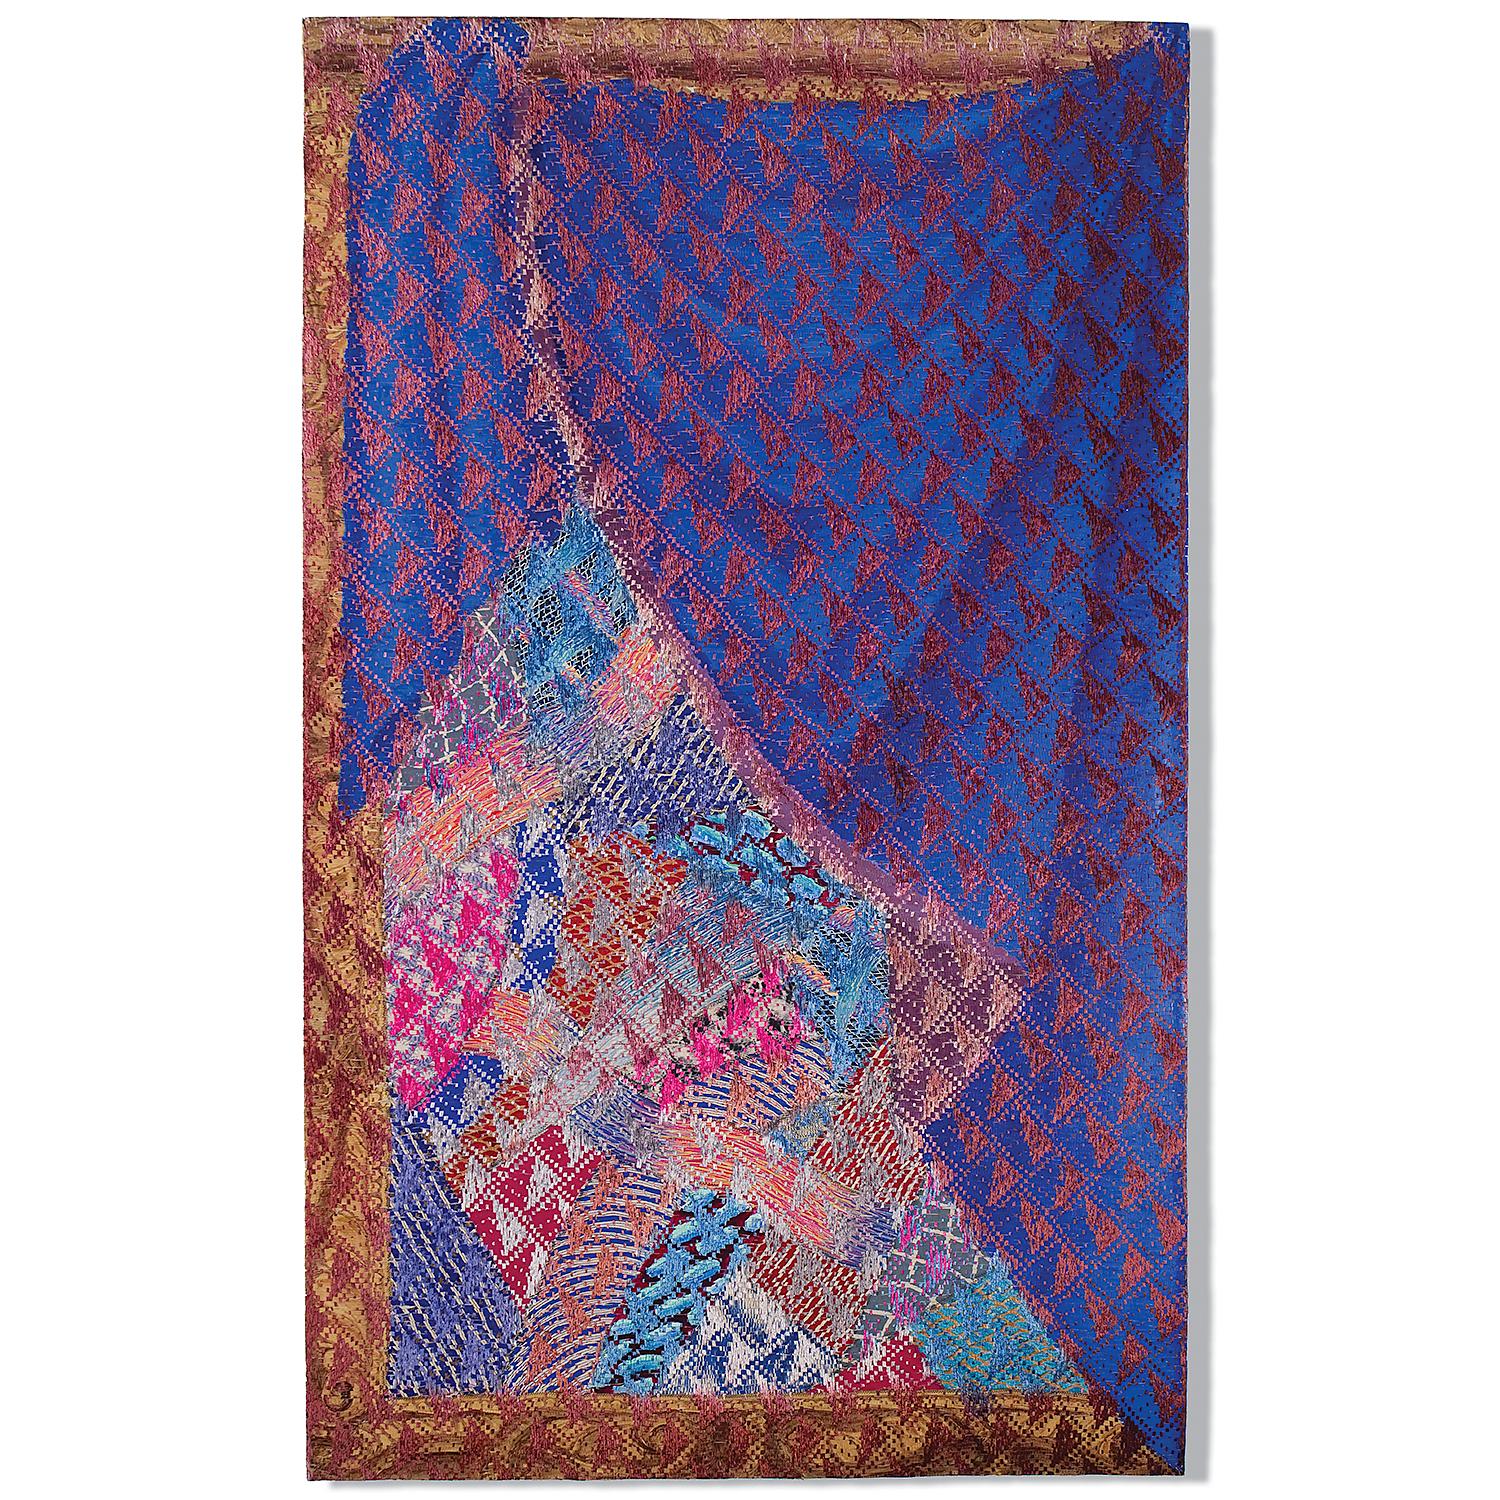 "Encadré et drapé : Material Collection", acrylique sur abaca, teintures sur rayonne ; tissé, 63" x 38", 1989.

Cette tapisserie abstraite contemporaine en techniques mixtes a été réalisée par la fibre américaine Lia Cook (née en 1942), basée en